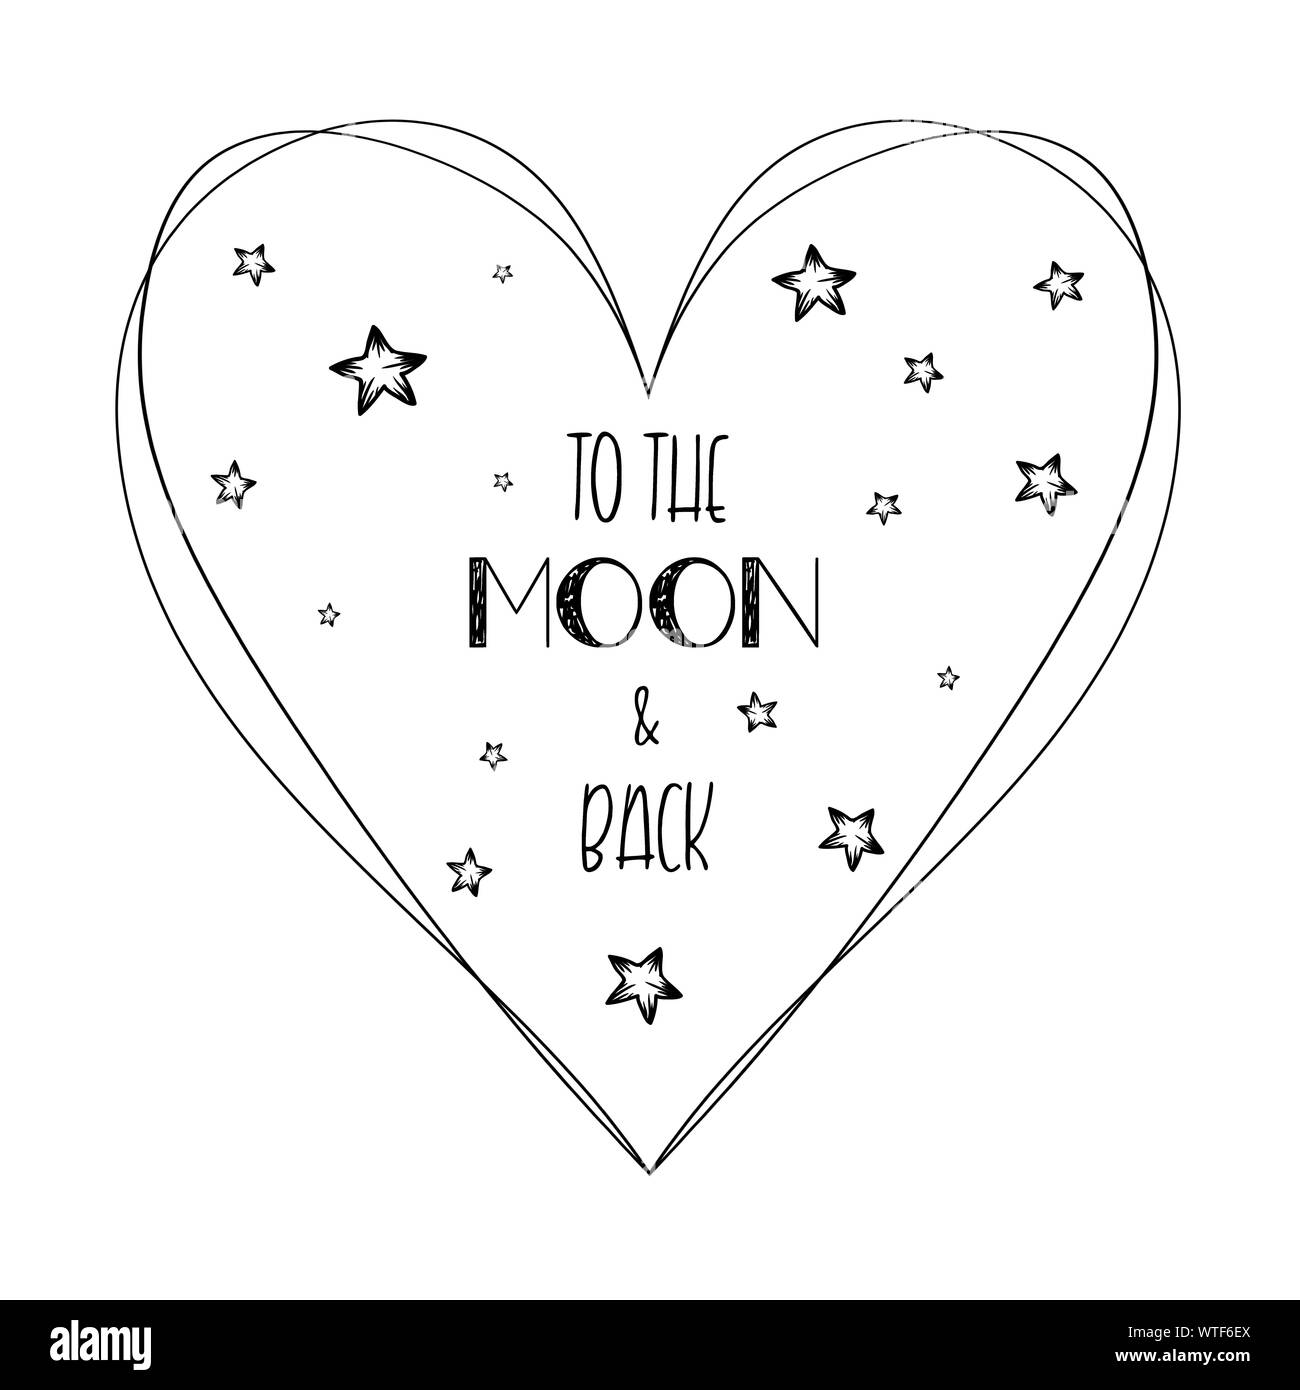 Citation romantique aime à la lune et retour croquis minimaliste composition lettrage. Design typographie dessiné à la main avec le coeur, les étoiles et le texte callig Banque D'Images